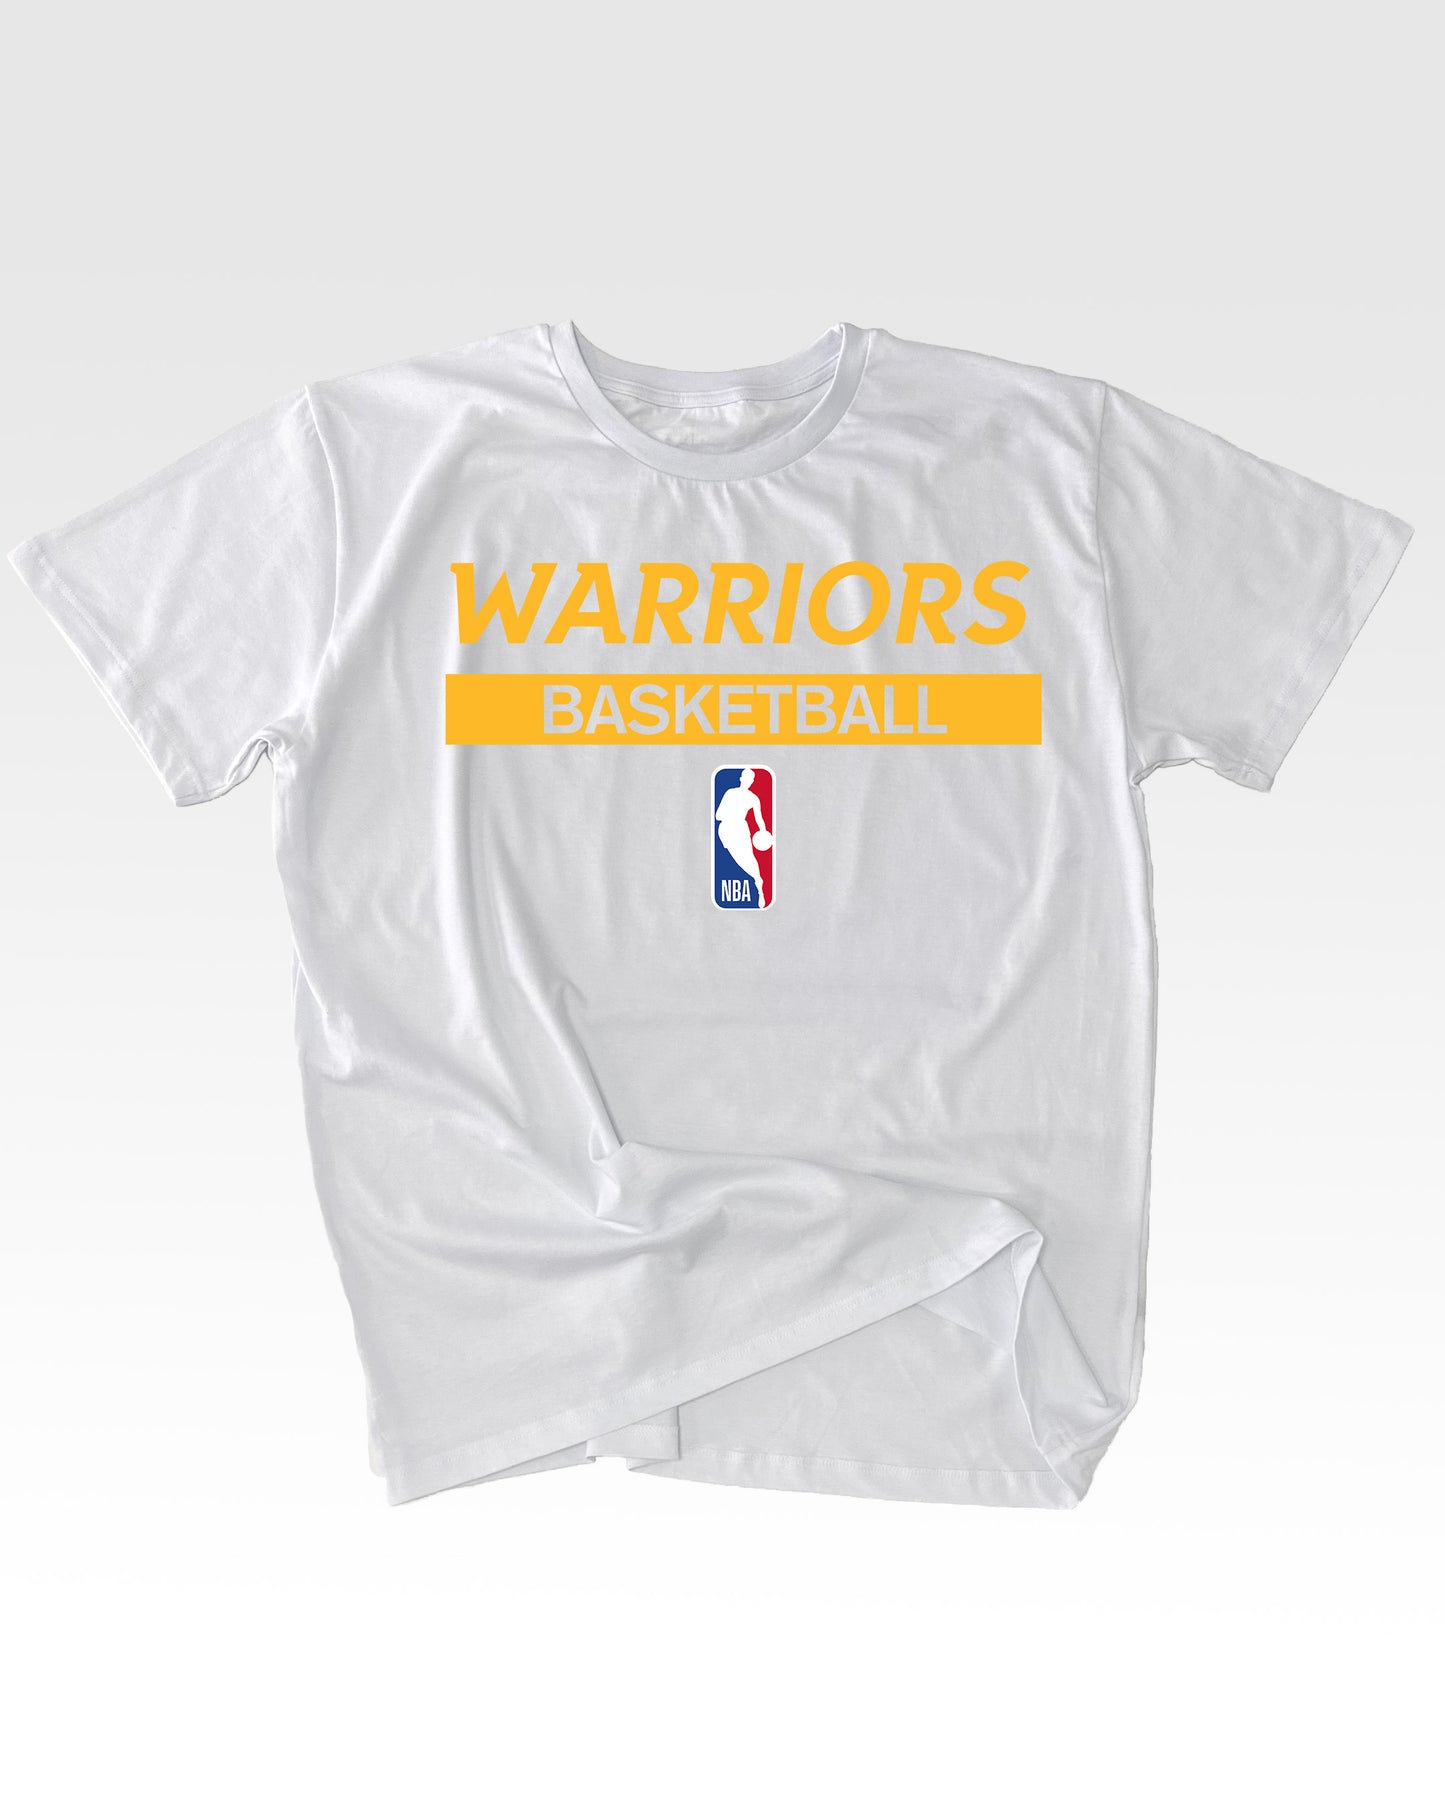 Golden State Warriors Basketball T-Shirt